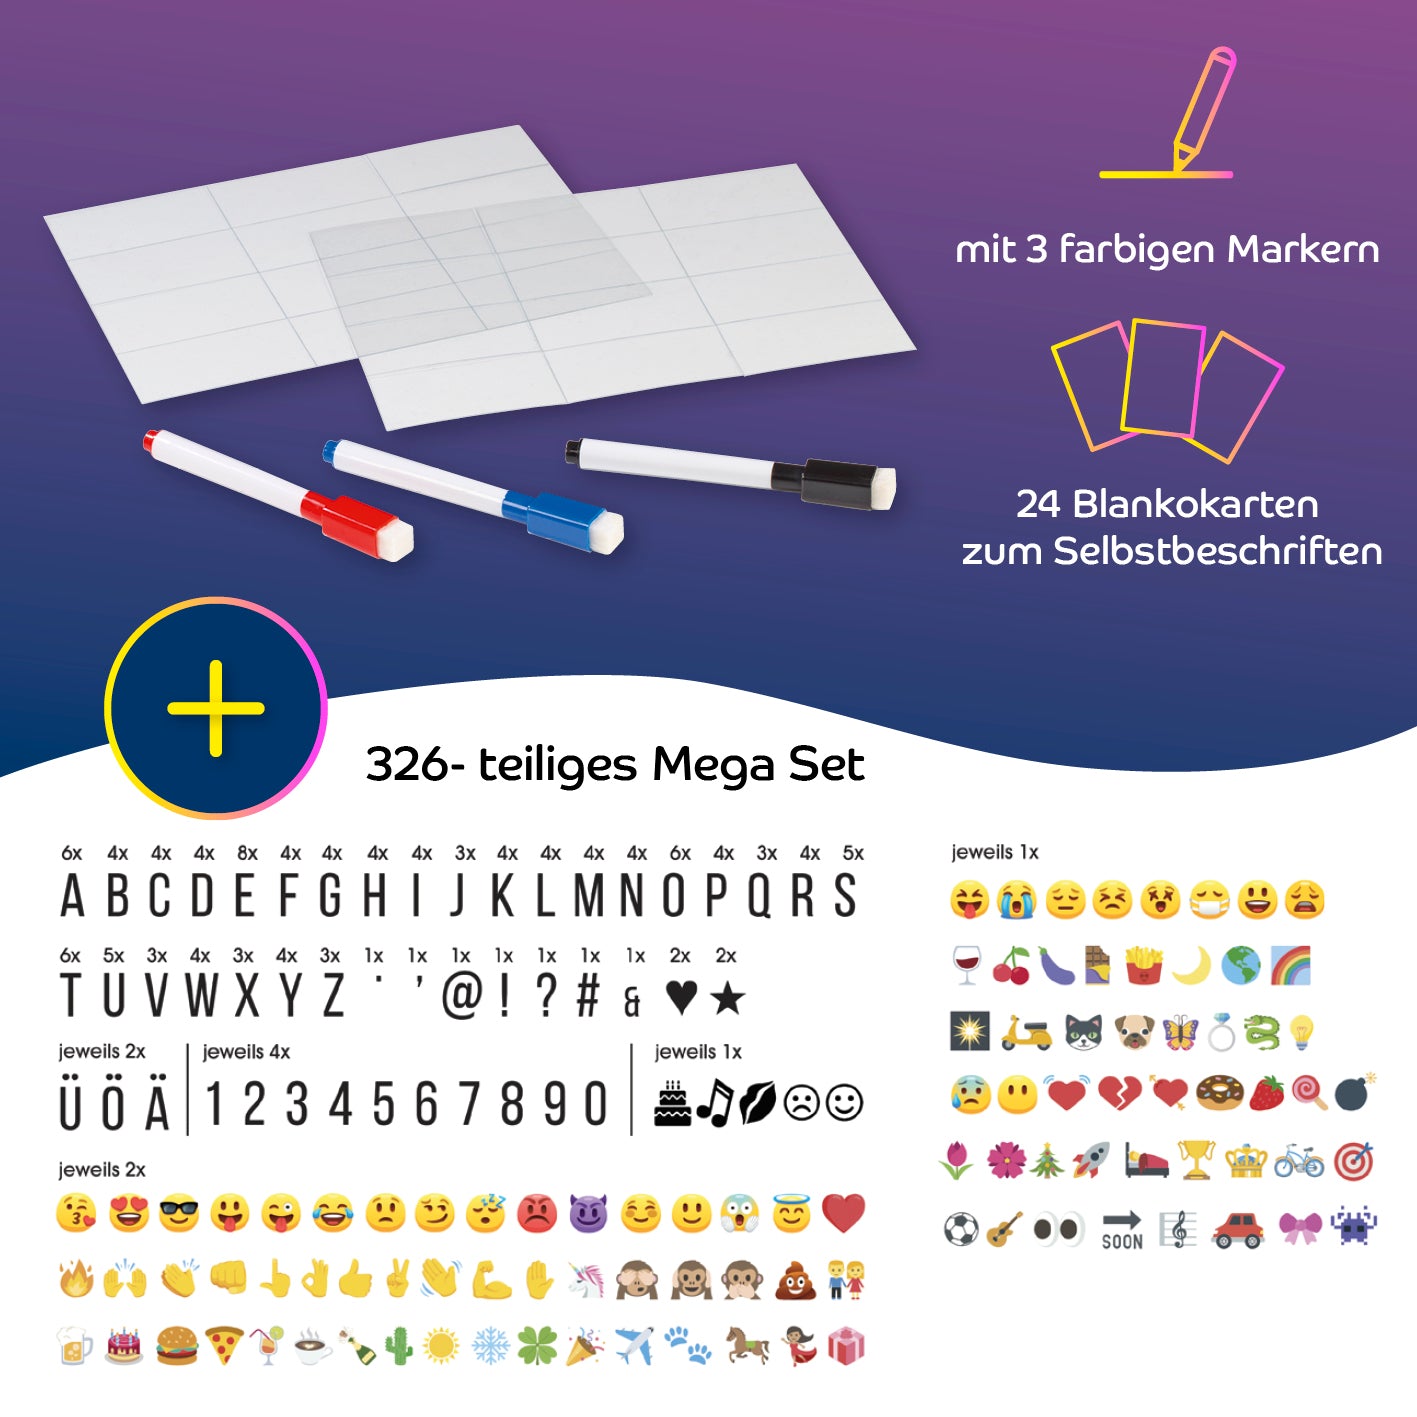 LED-Leuchtkasten A3 mit 173 Buchstaben, Zahlen und Zeichen und 150 bunten Mood Pics inkl. Schreib-Set (3 Stifte & 20 blanko Karten)